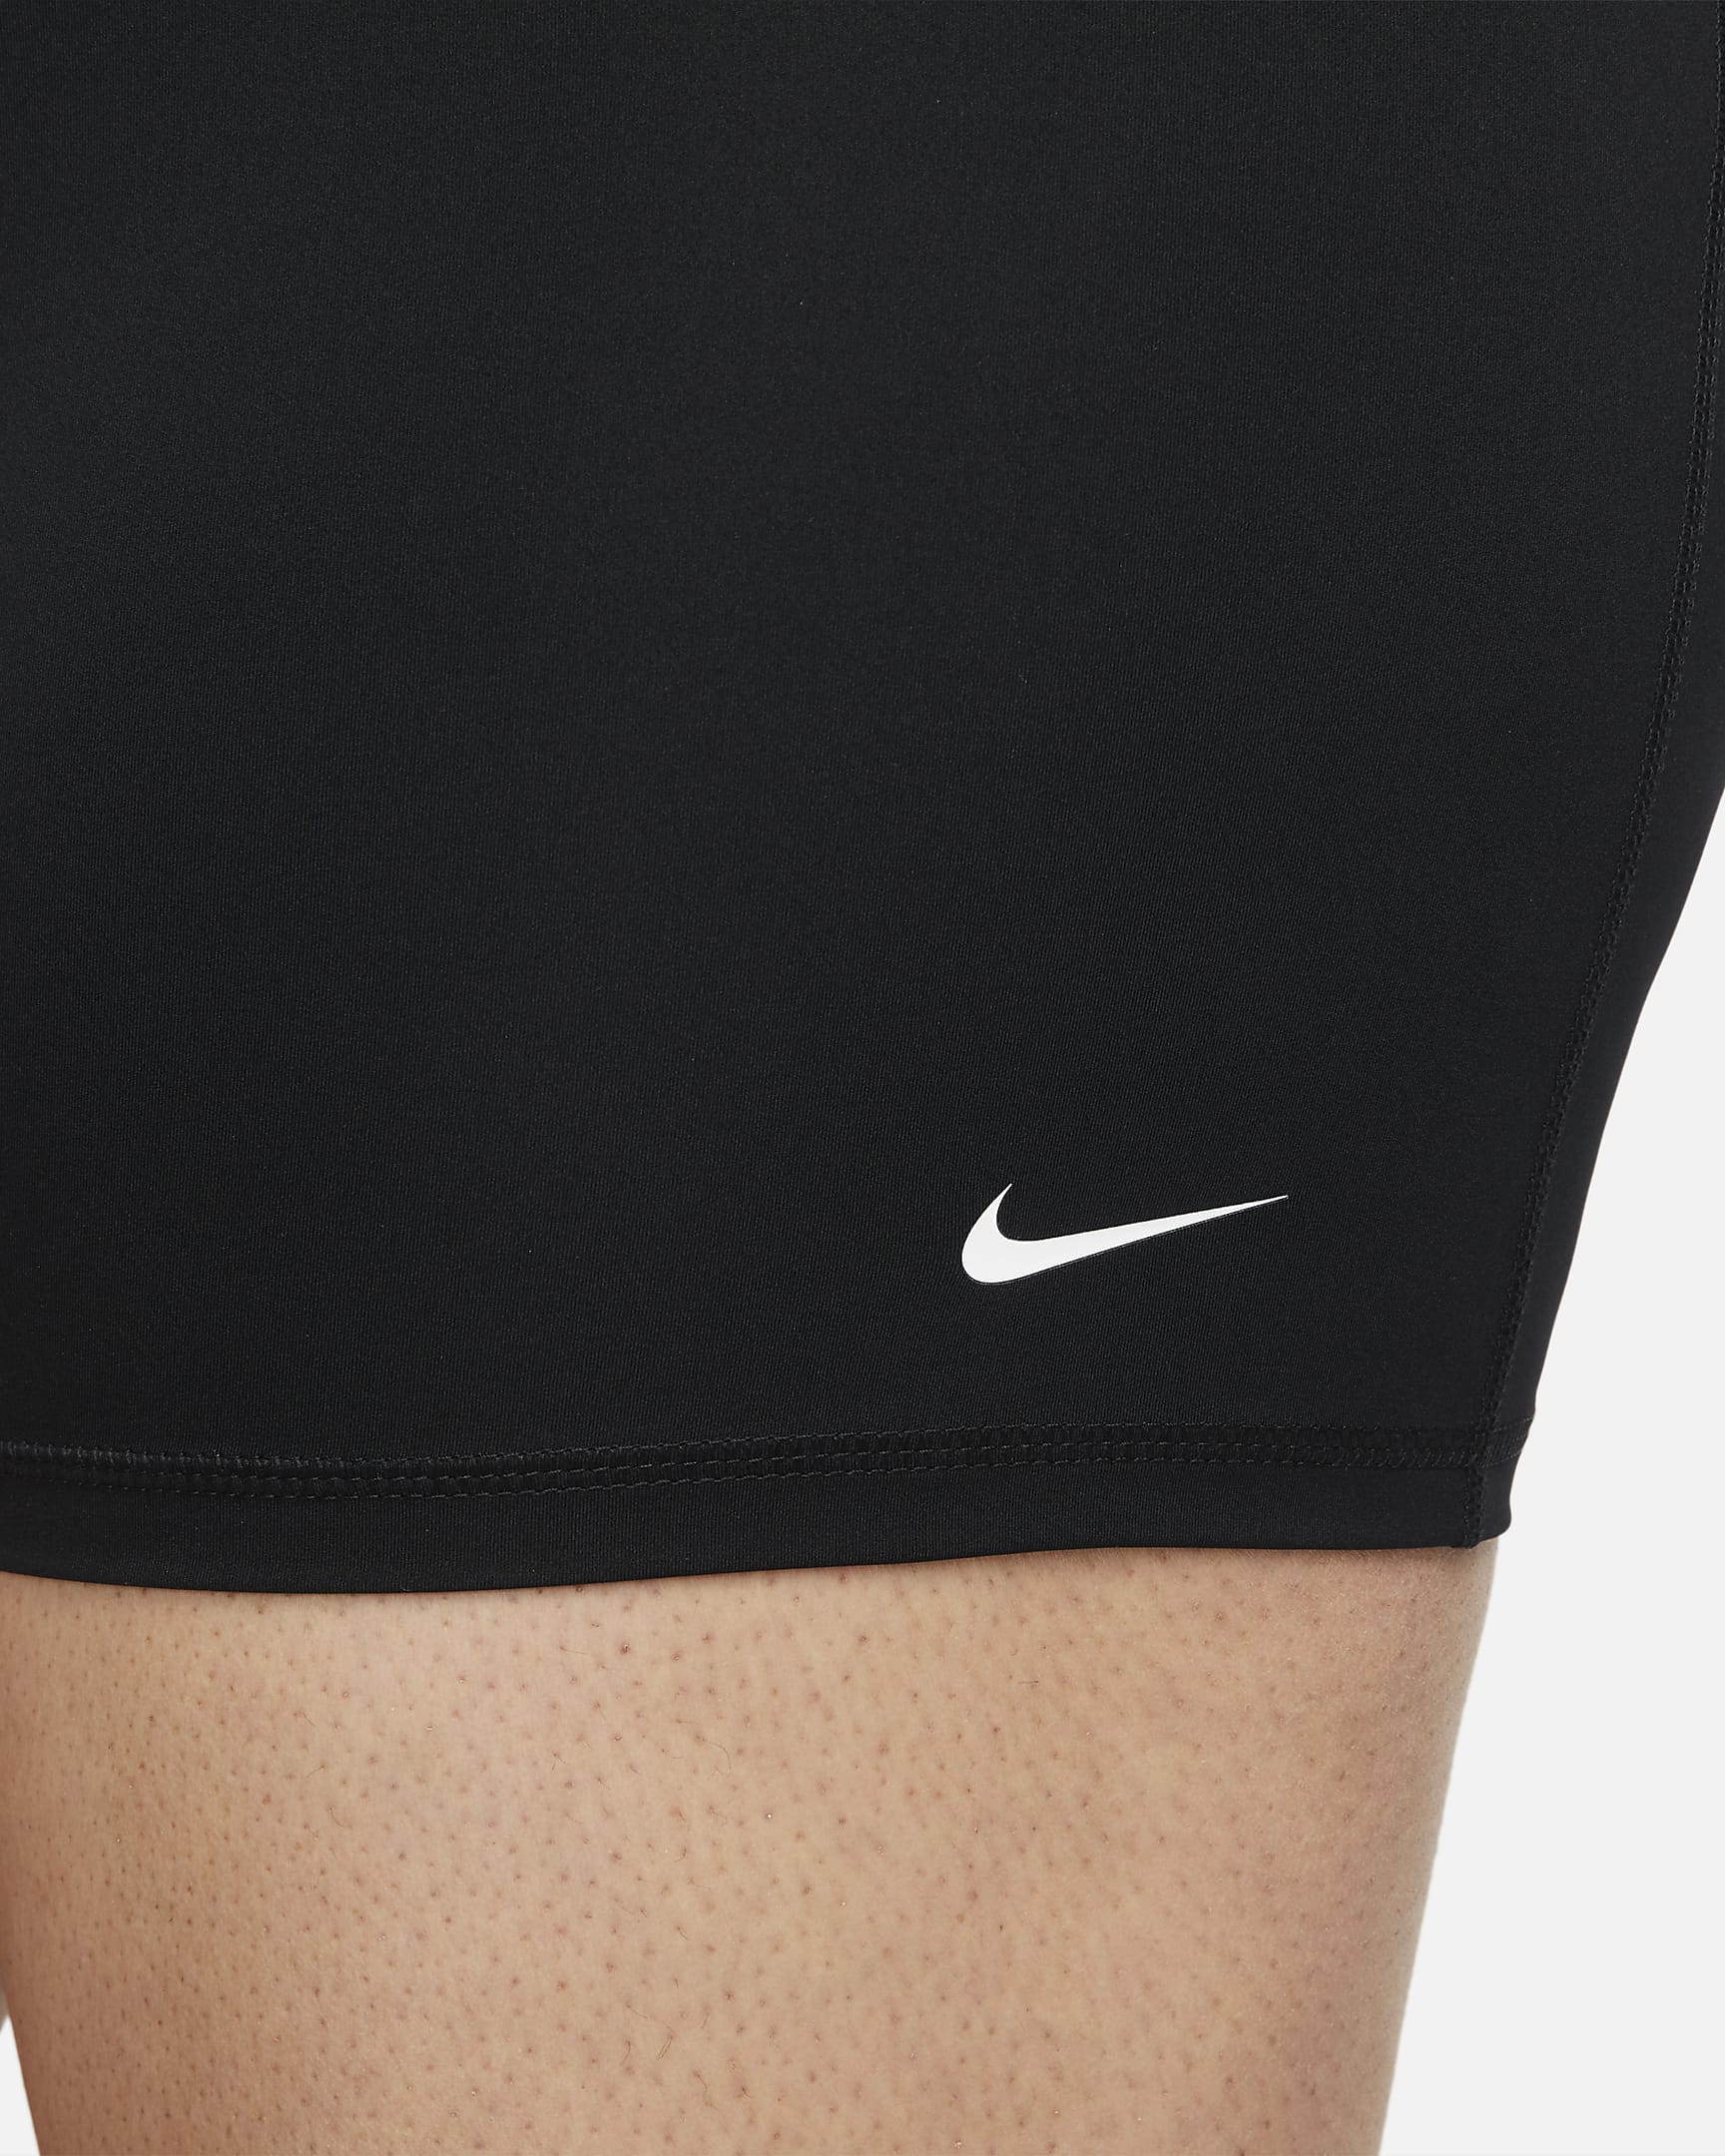 Nike Pro 365 Damenshorts (ca. 12,5 cm) (große Größe) - Schwarz/Weiß